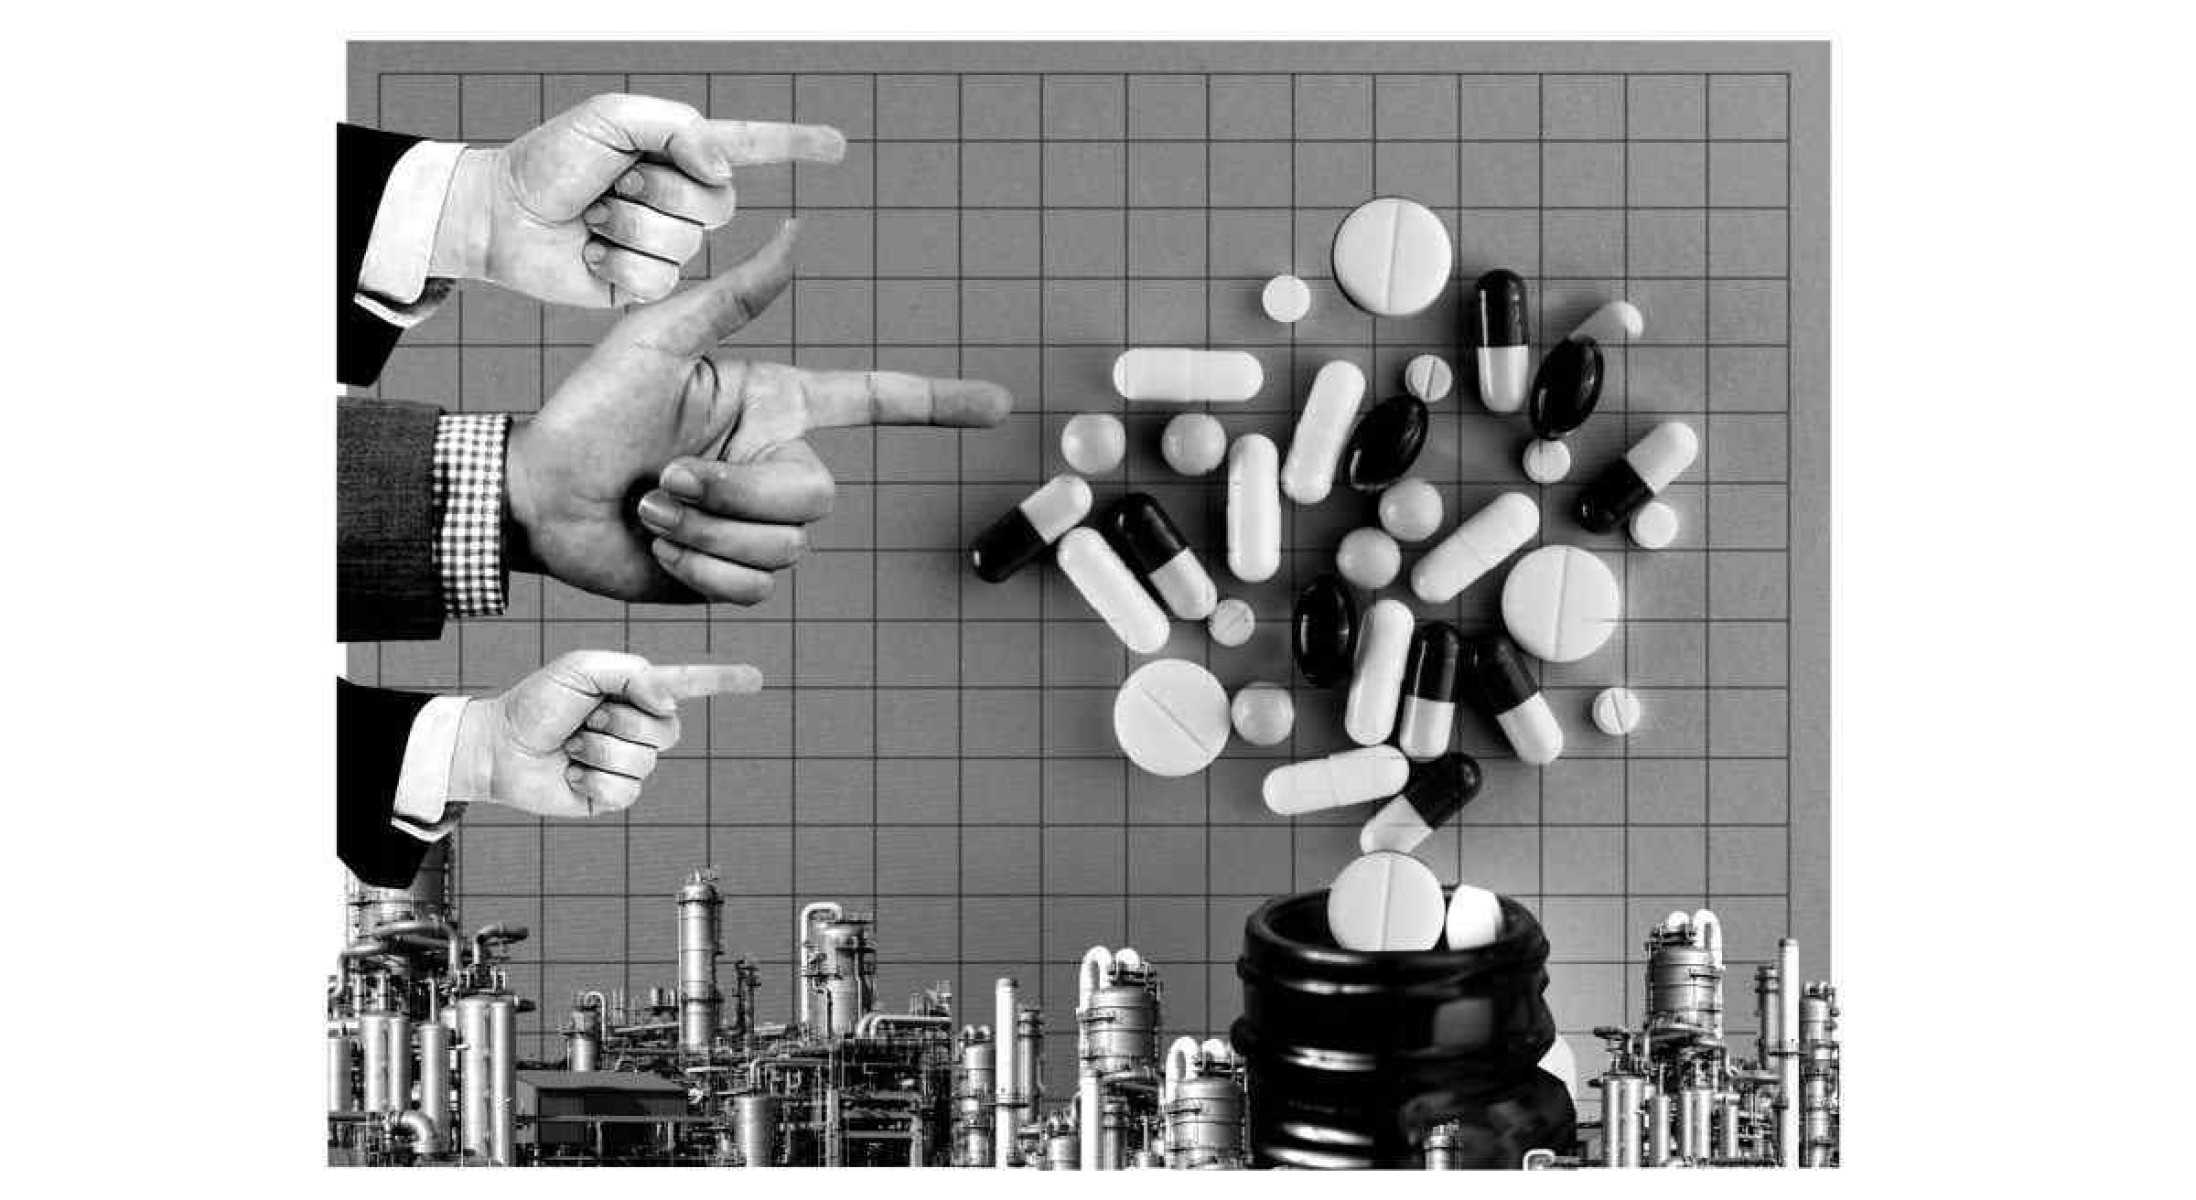 Artigo: Pesquisa e inovação no setor farmacêutico sob ameaça 